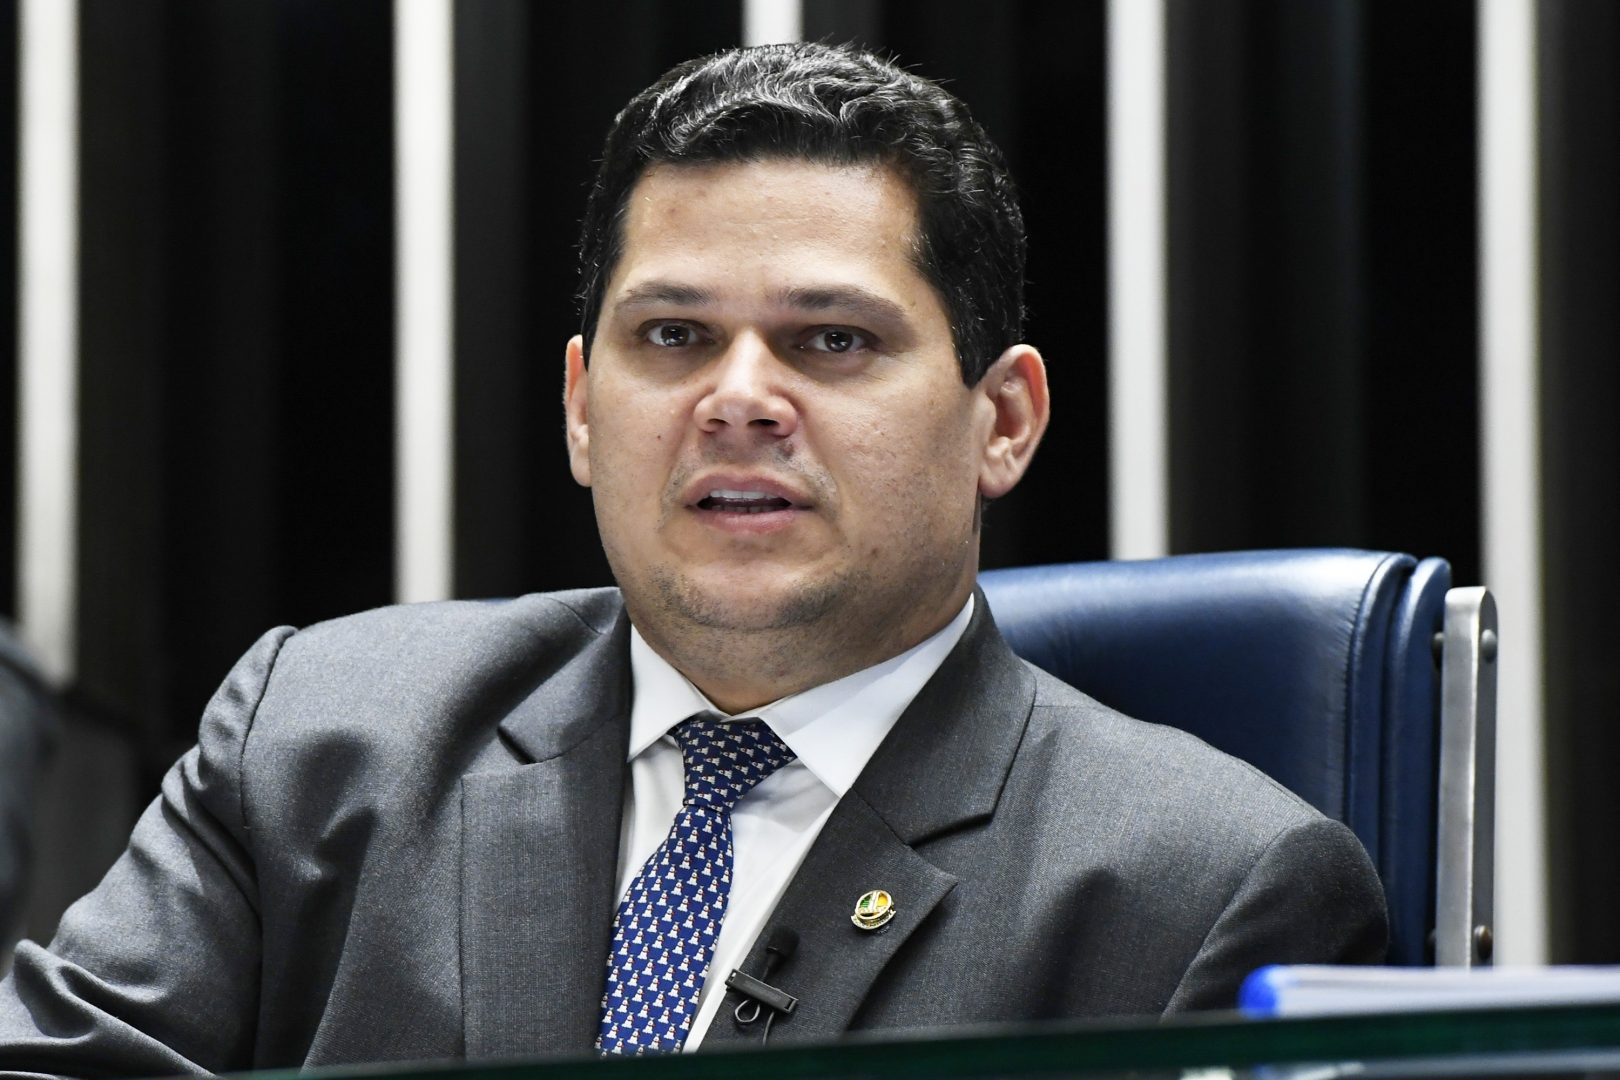 Foto: Marcos Oliveira/Agência Senado